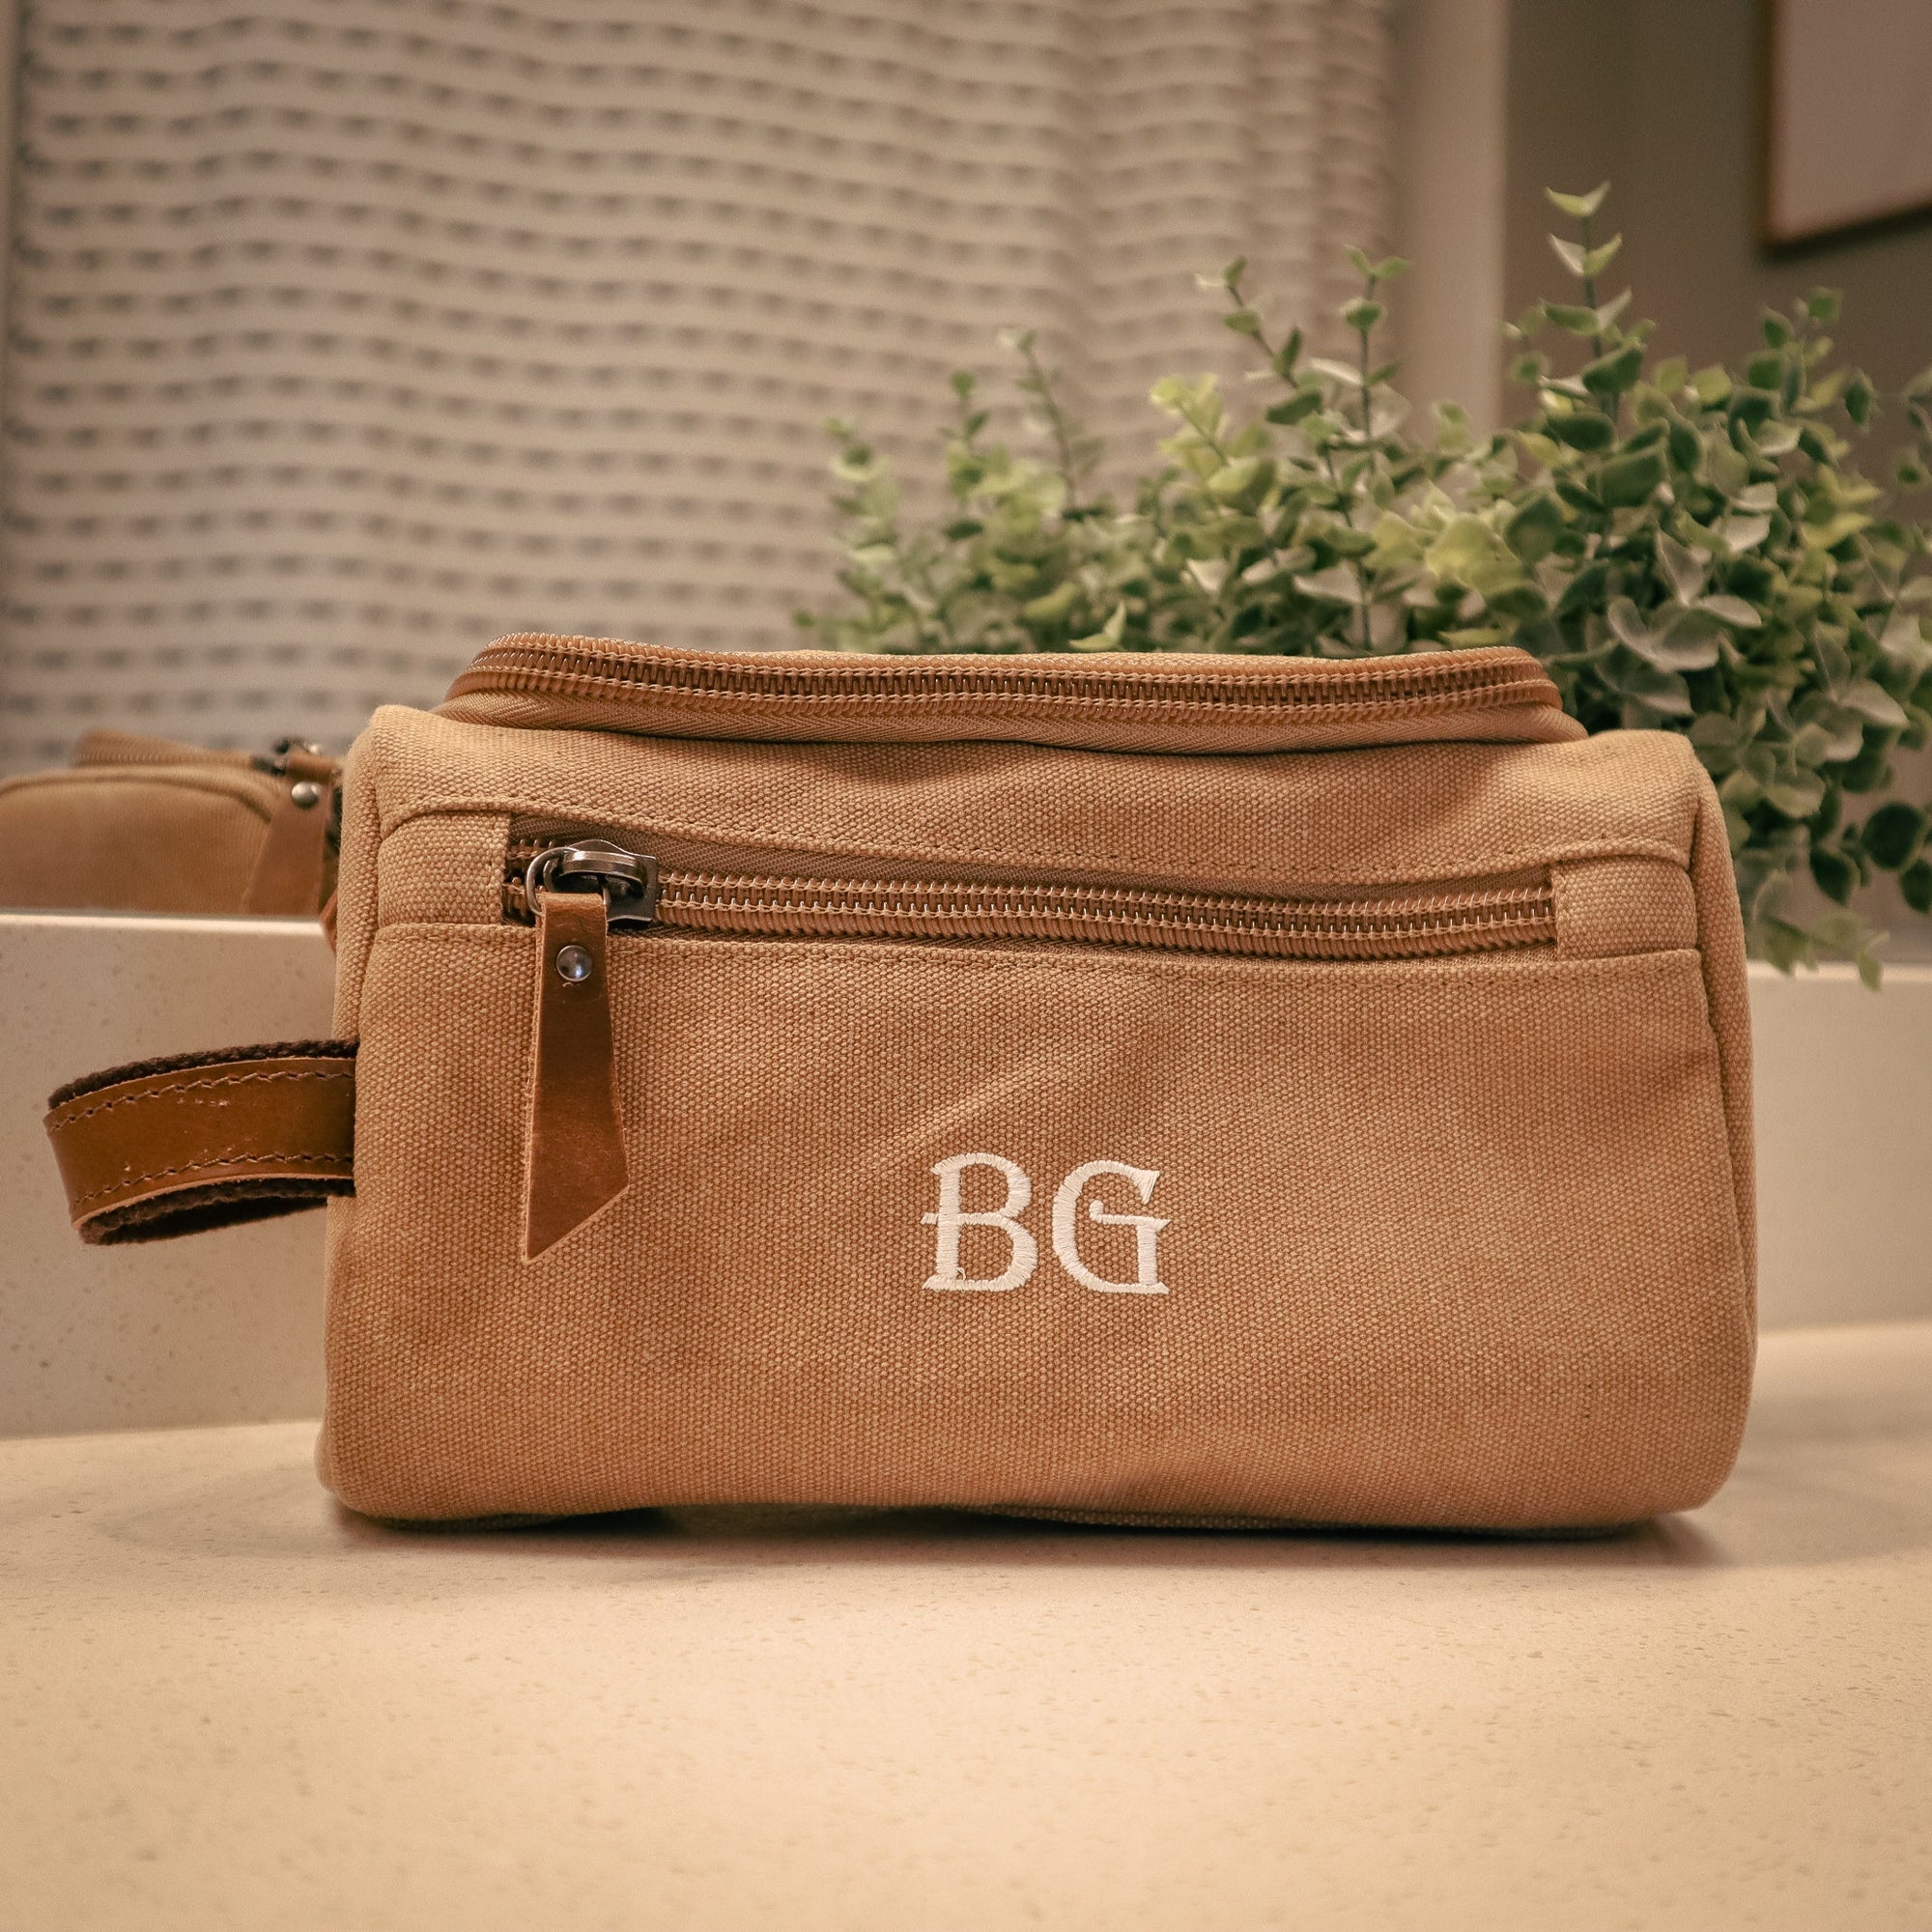 Gentleman’s Toiletry Bag